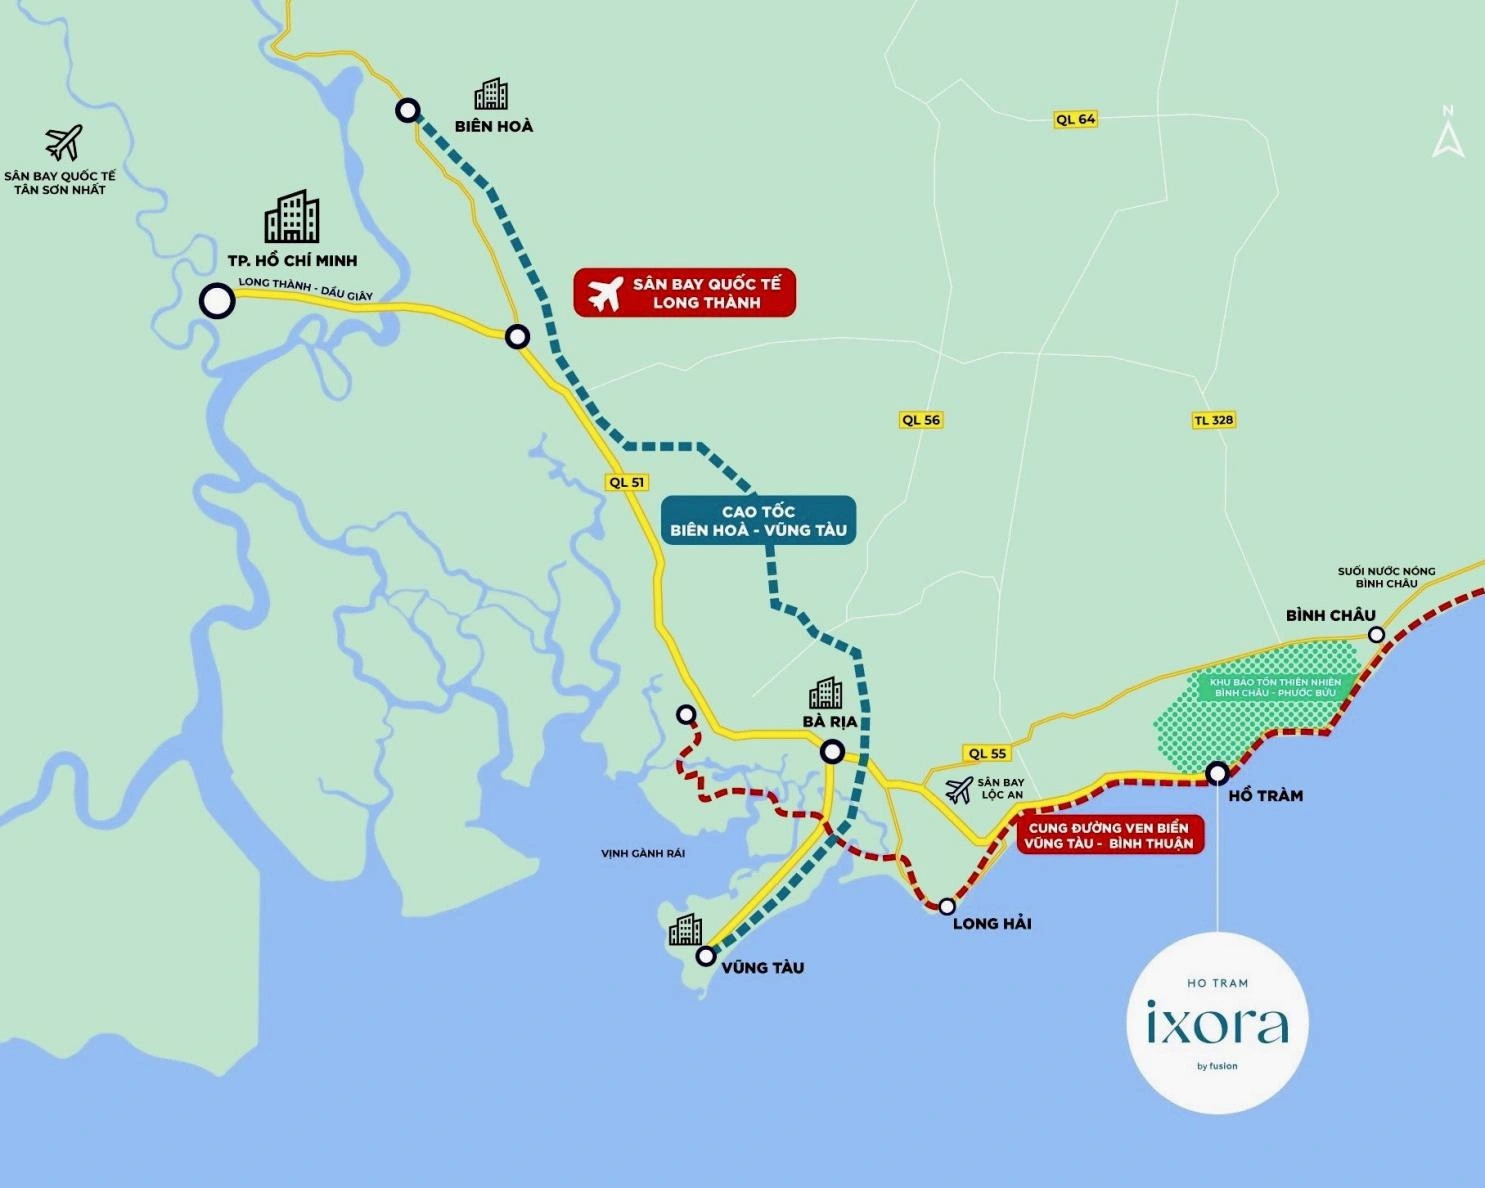 Hồ Tràm hưởng lợi từ cú hích hạ tầng giao thông kết nối liên vùng.